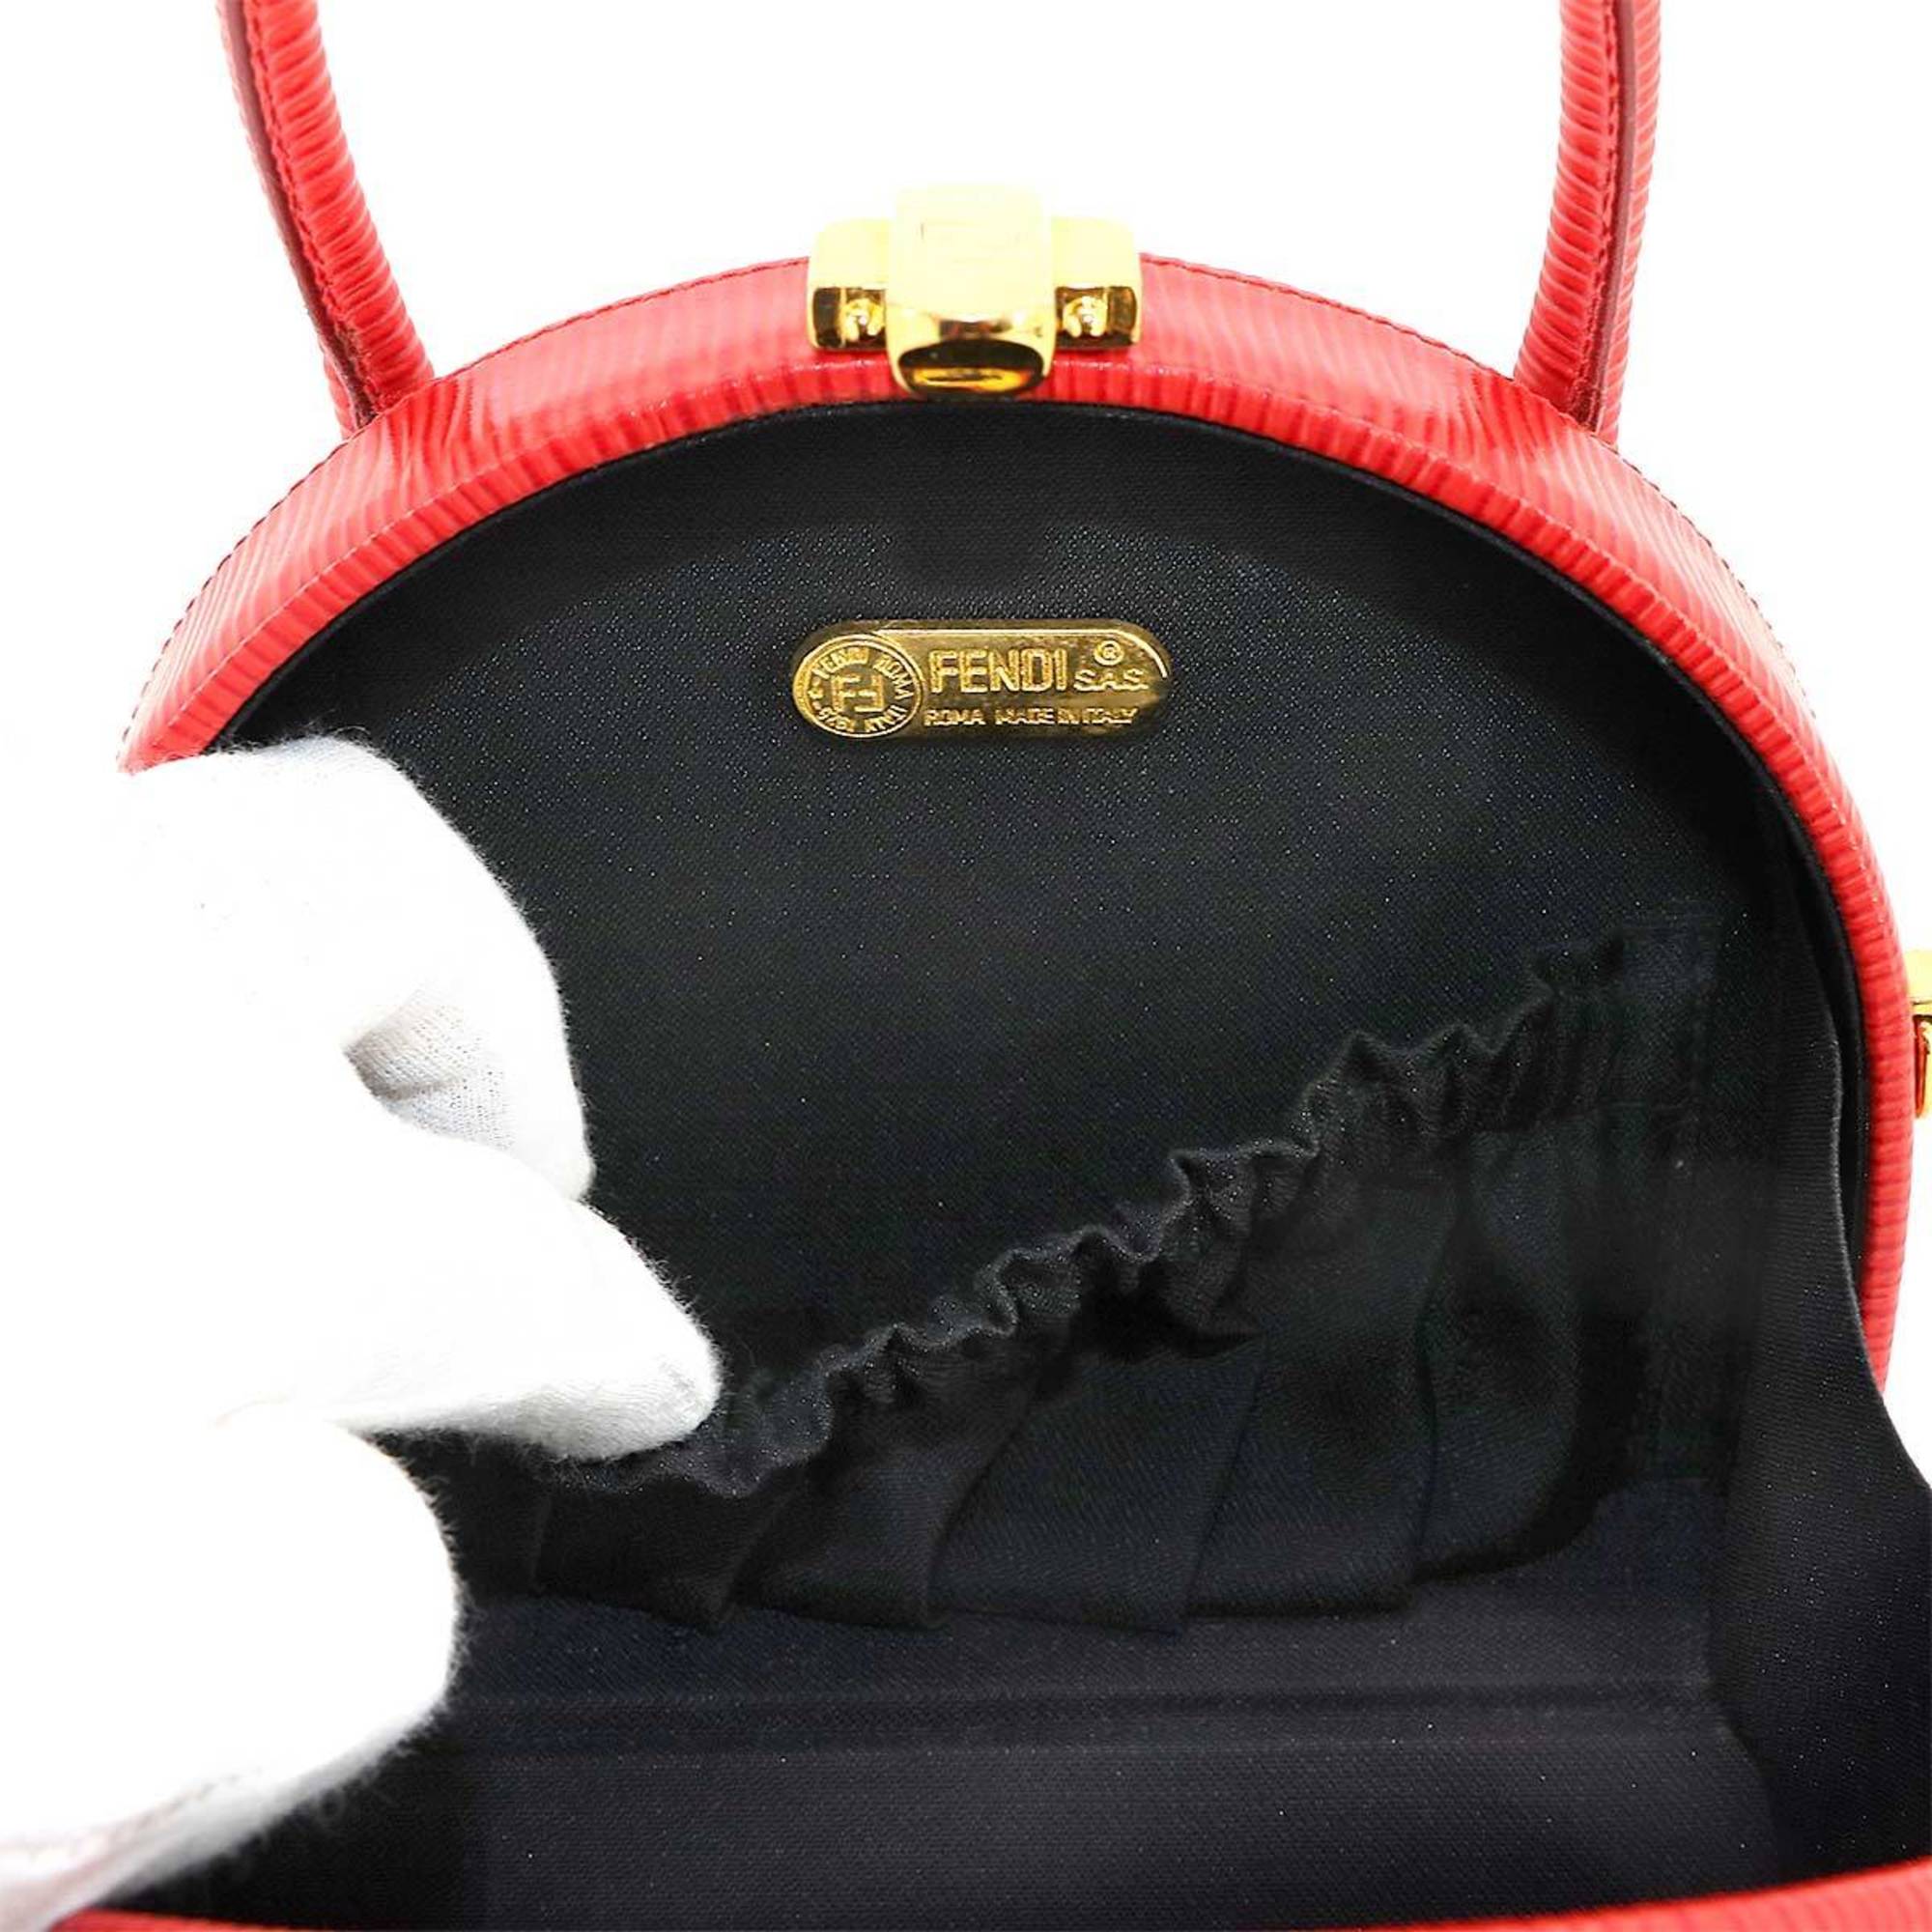 FENDI Epi 2way hand shoulder bag leather red gold metal fittings Hand Shoulder Bag